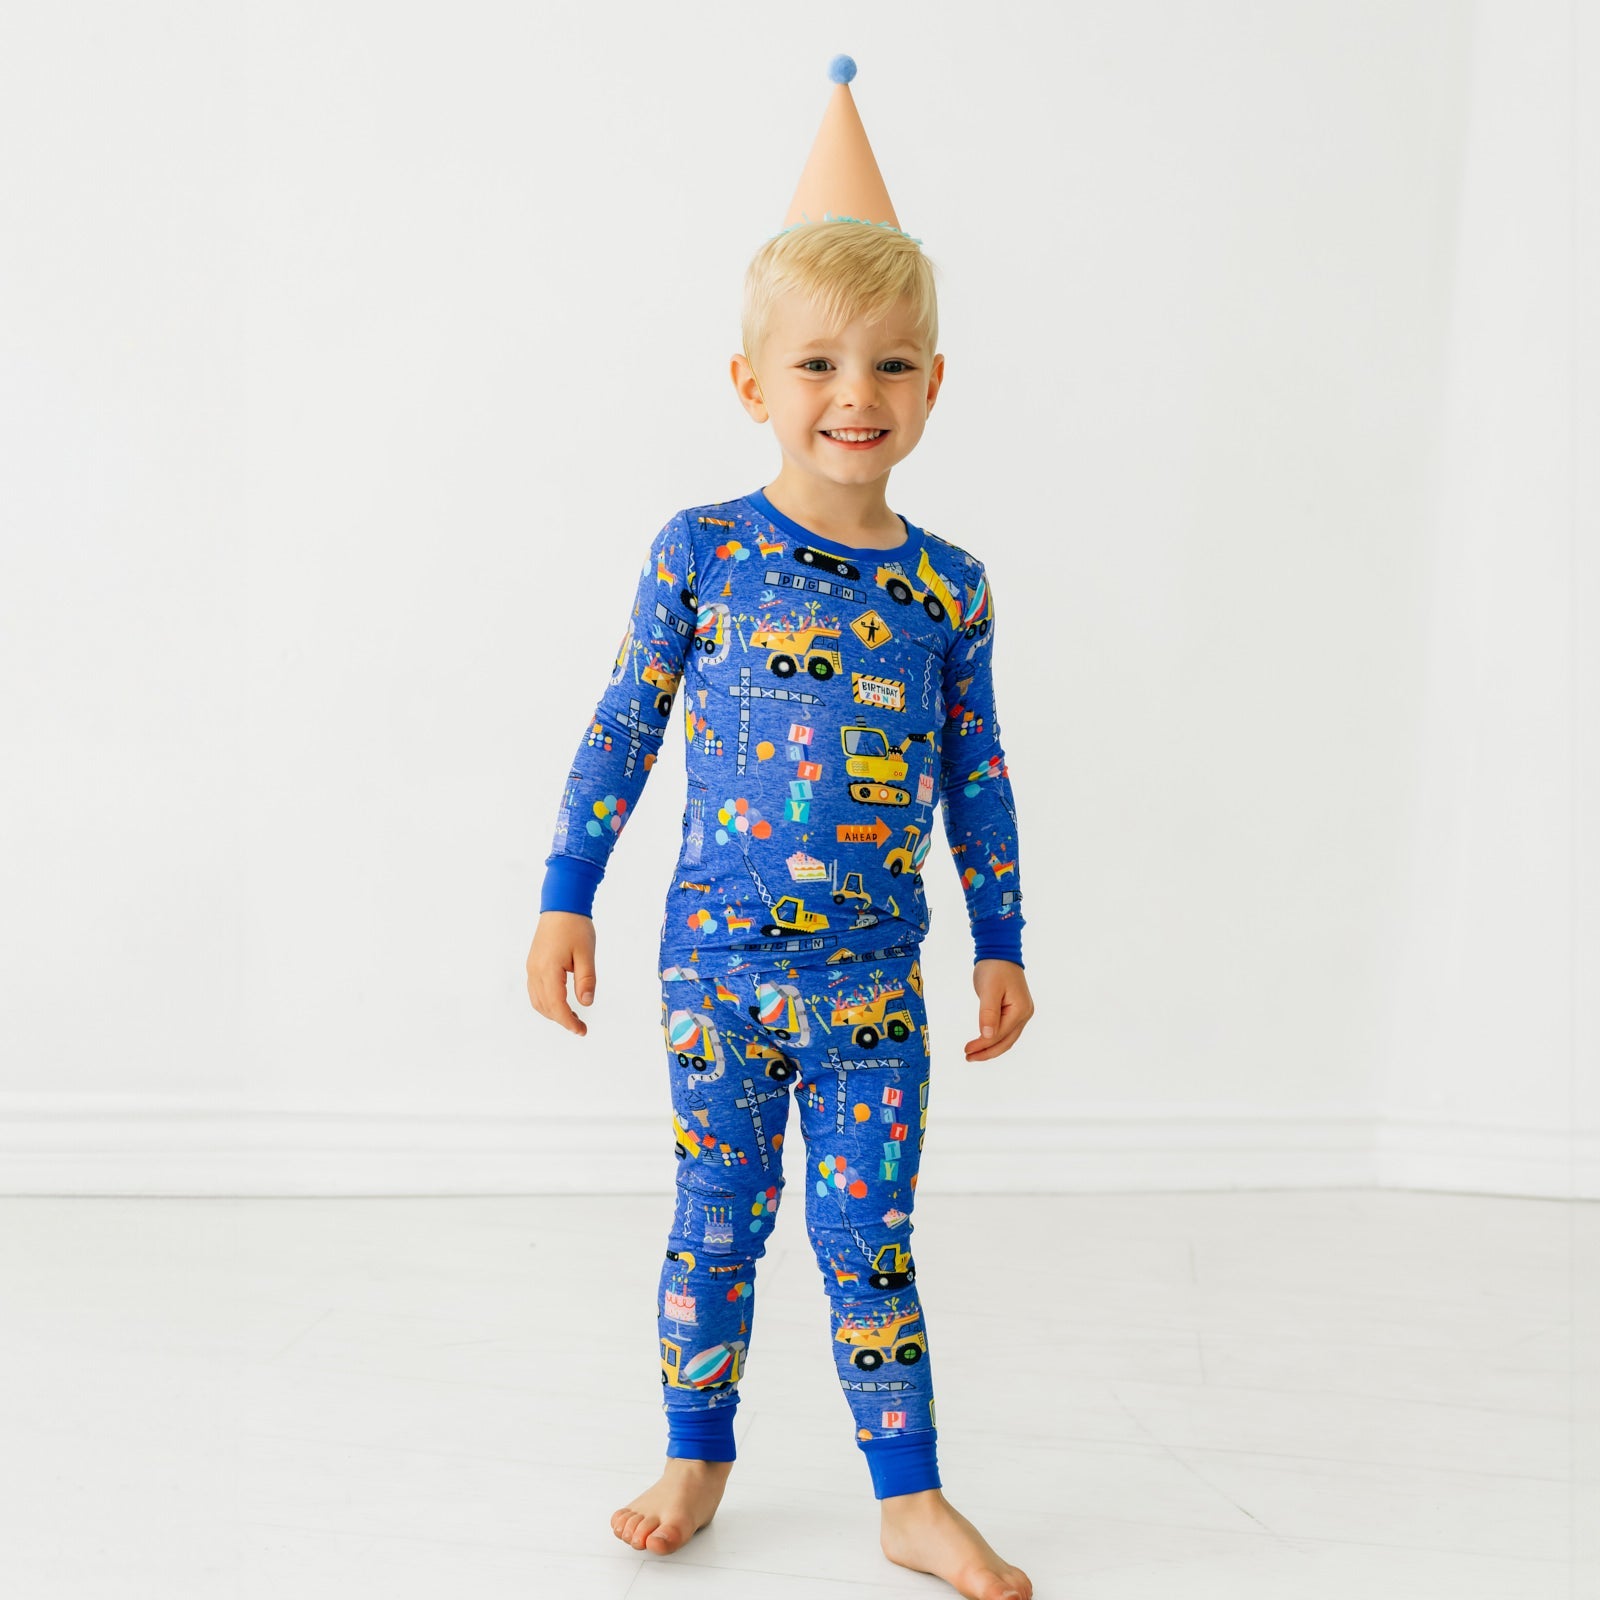 Full Image Of Kid Wearing Birthday Builder Long Sleeve PJ Set